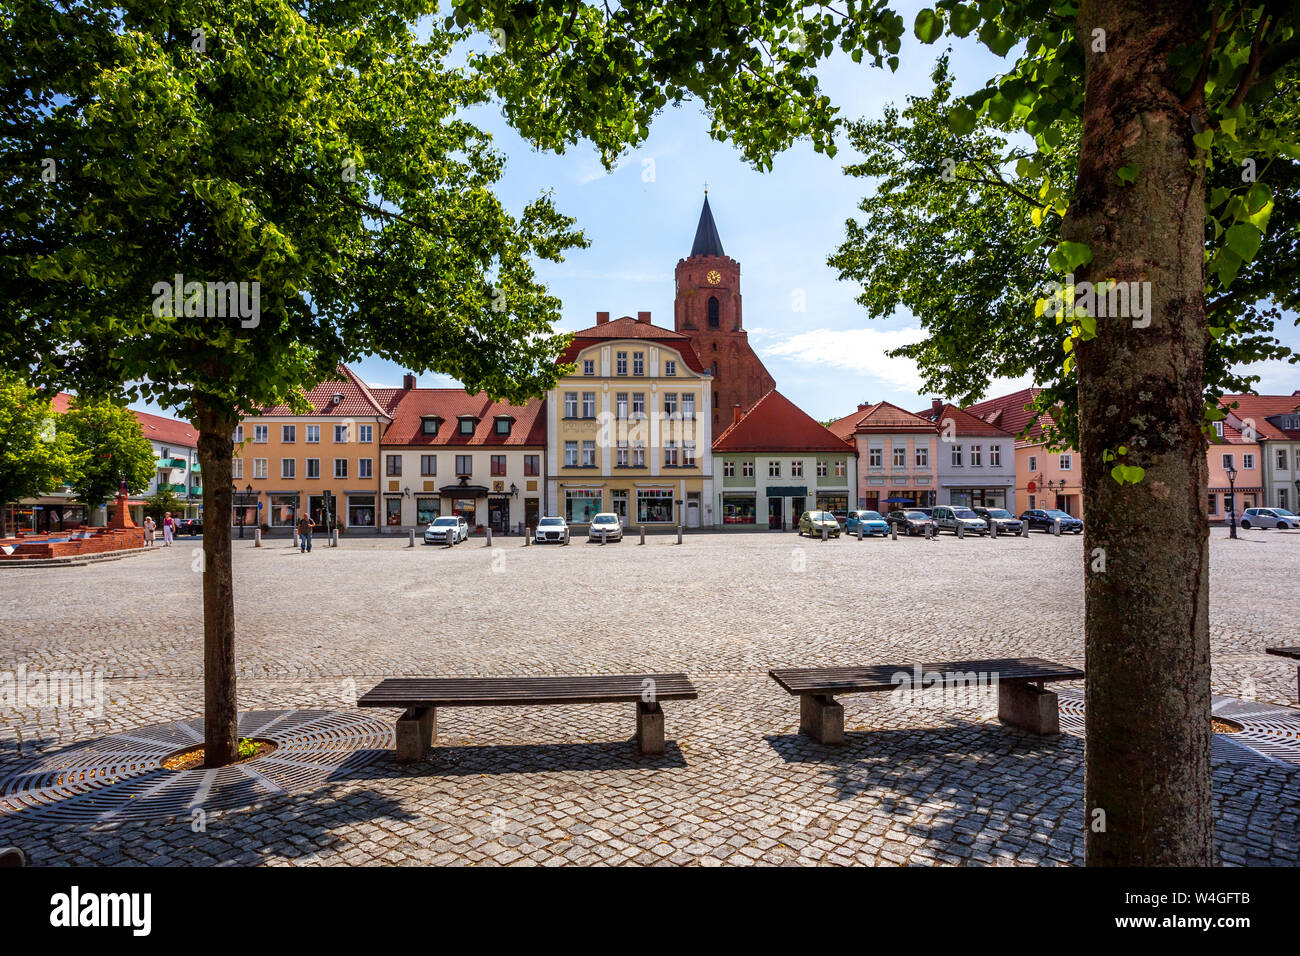 La plaza del mercado y la iglesia de Santa María, Beeskow, Alemania Foto de stock